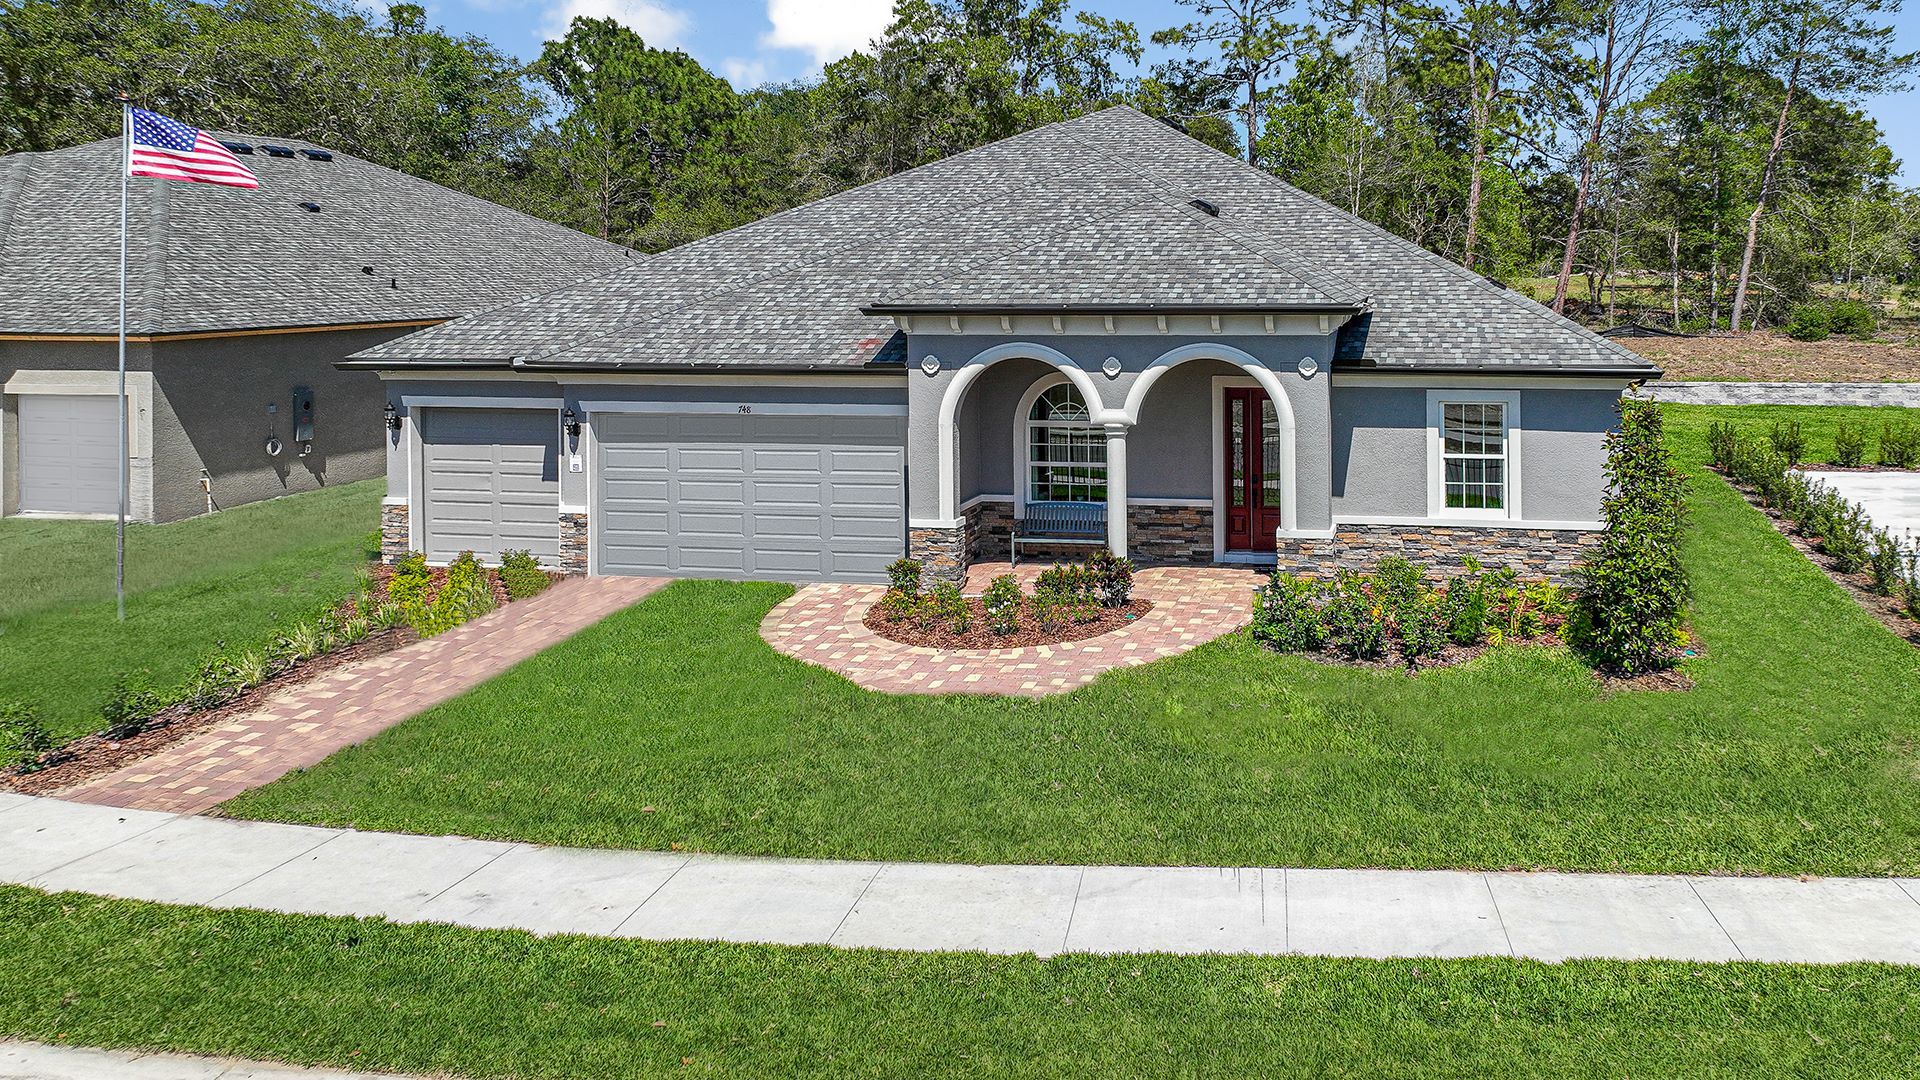 Joyce New Home Plan at Whiting Estates:Joyce new construction home plans at Whiting Estates by William Ryan Homes Tampa